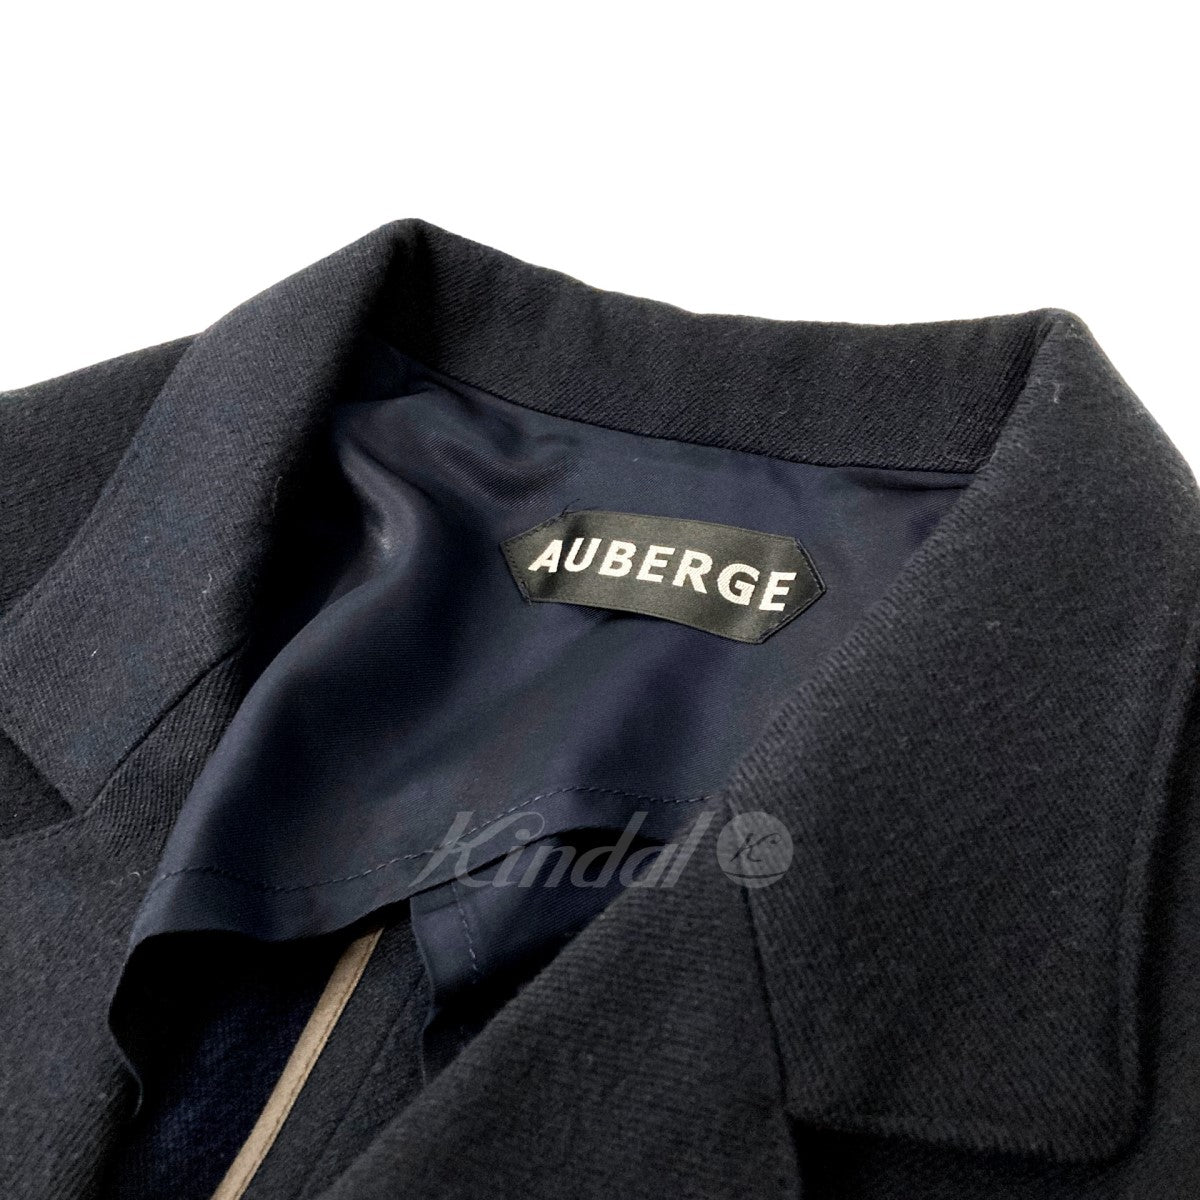 AUBERGE(オーベルジュ) BESSON テーラードジャケット ネイビー サイズ 